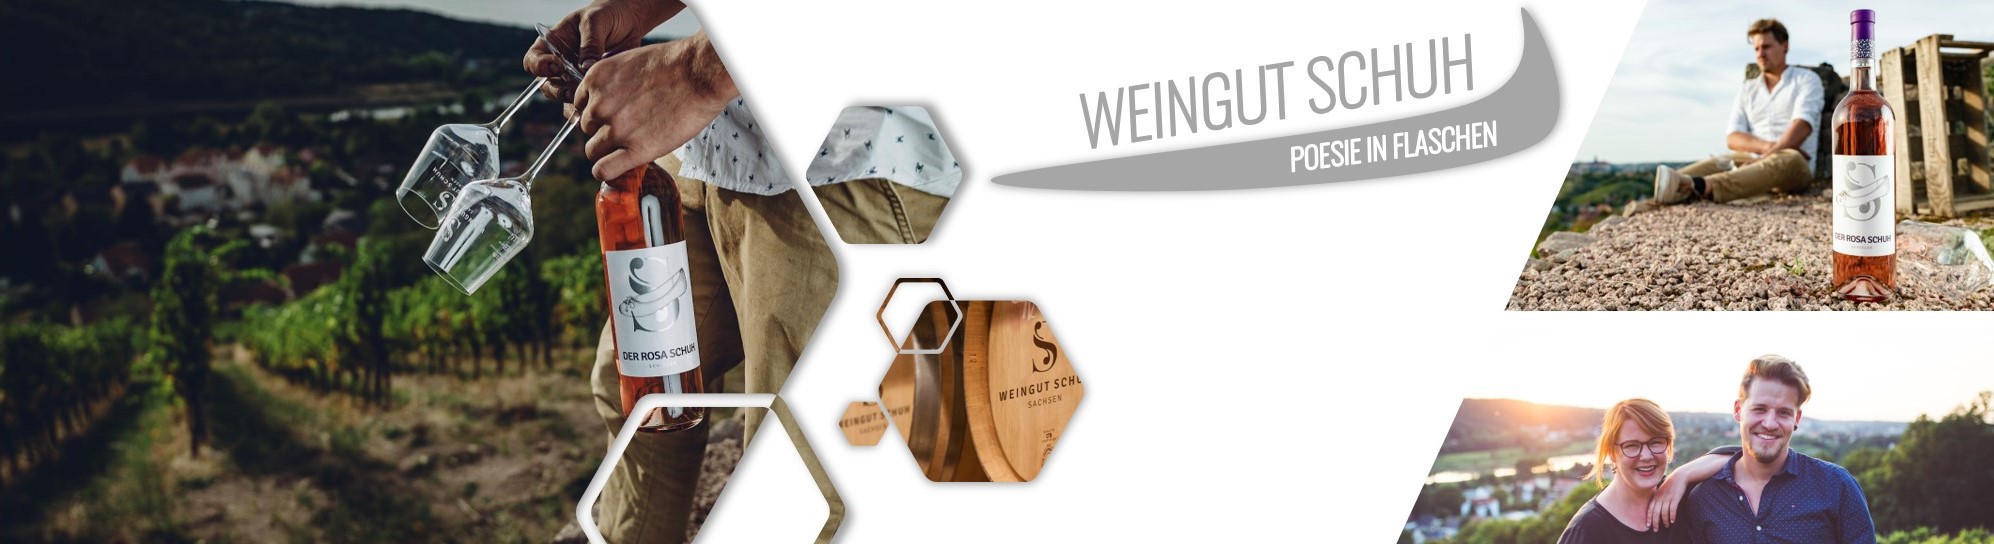 Weingut Schuh - die besten sächsischen Weine online kaufen unter www.dresden-onlineshop.de